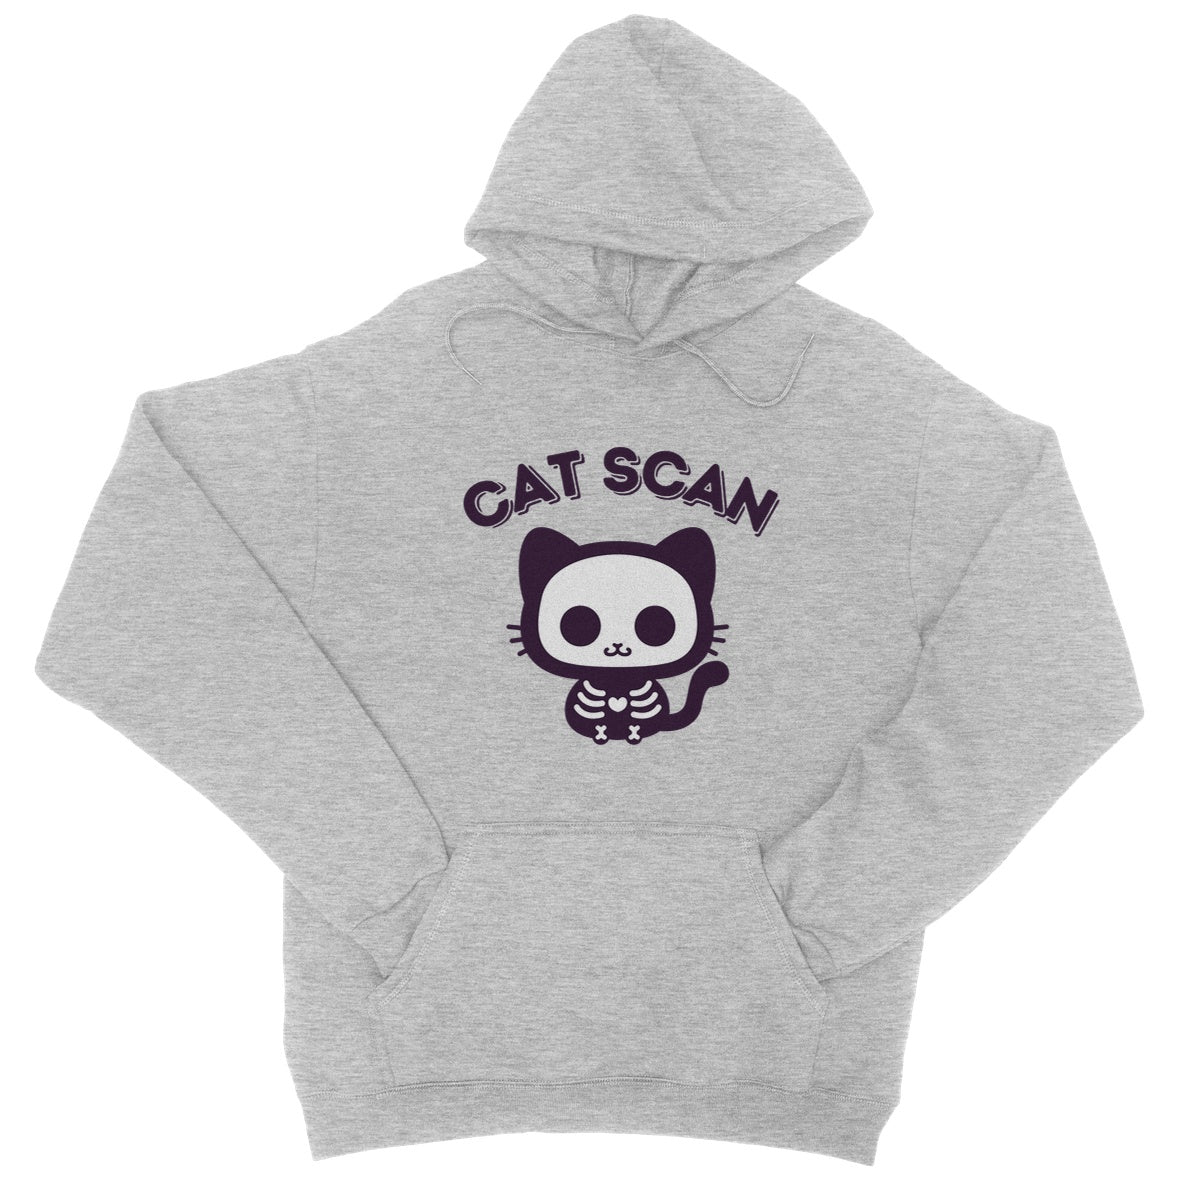 cat scan hoodie grey